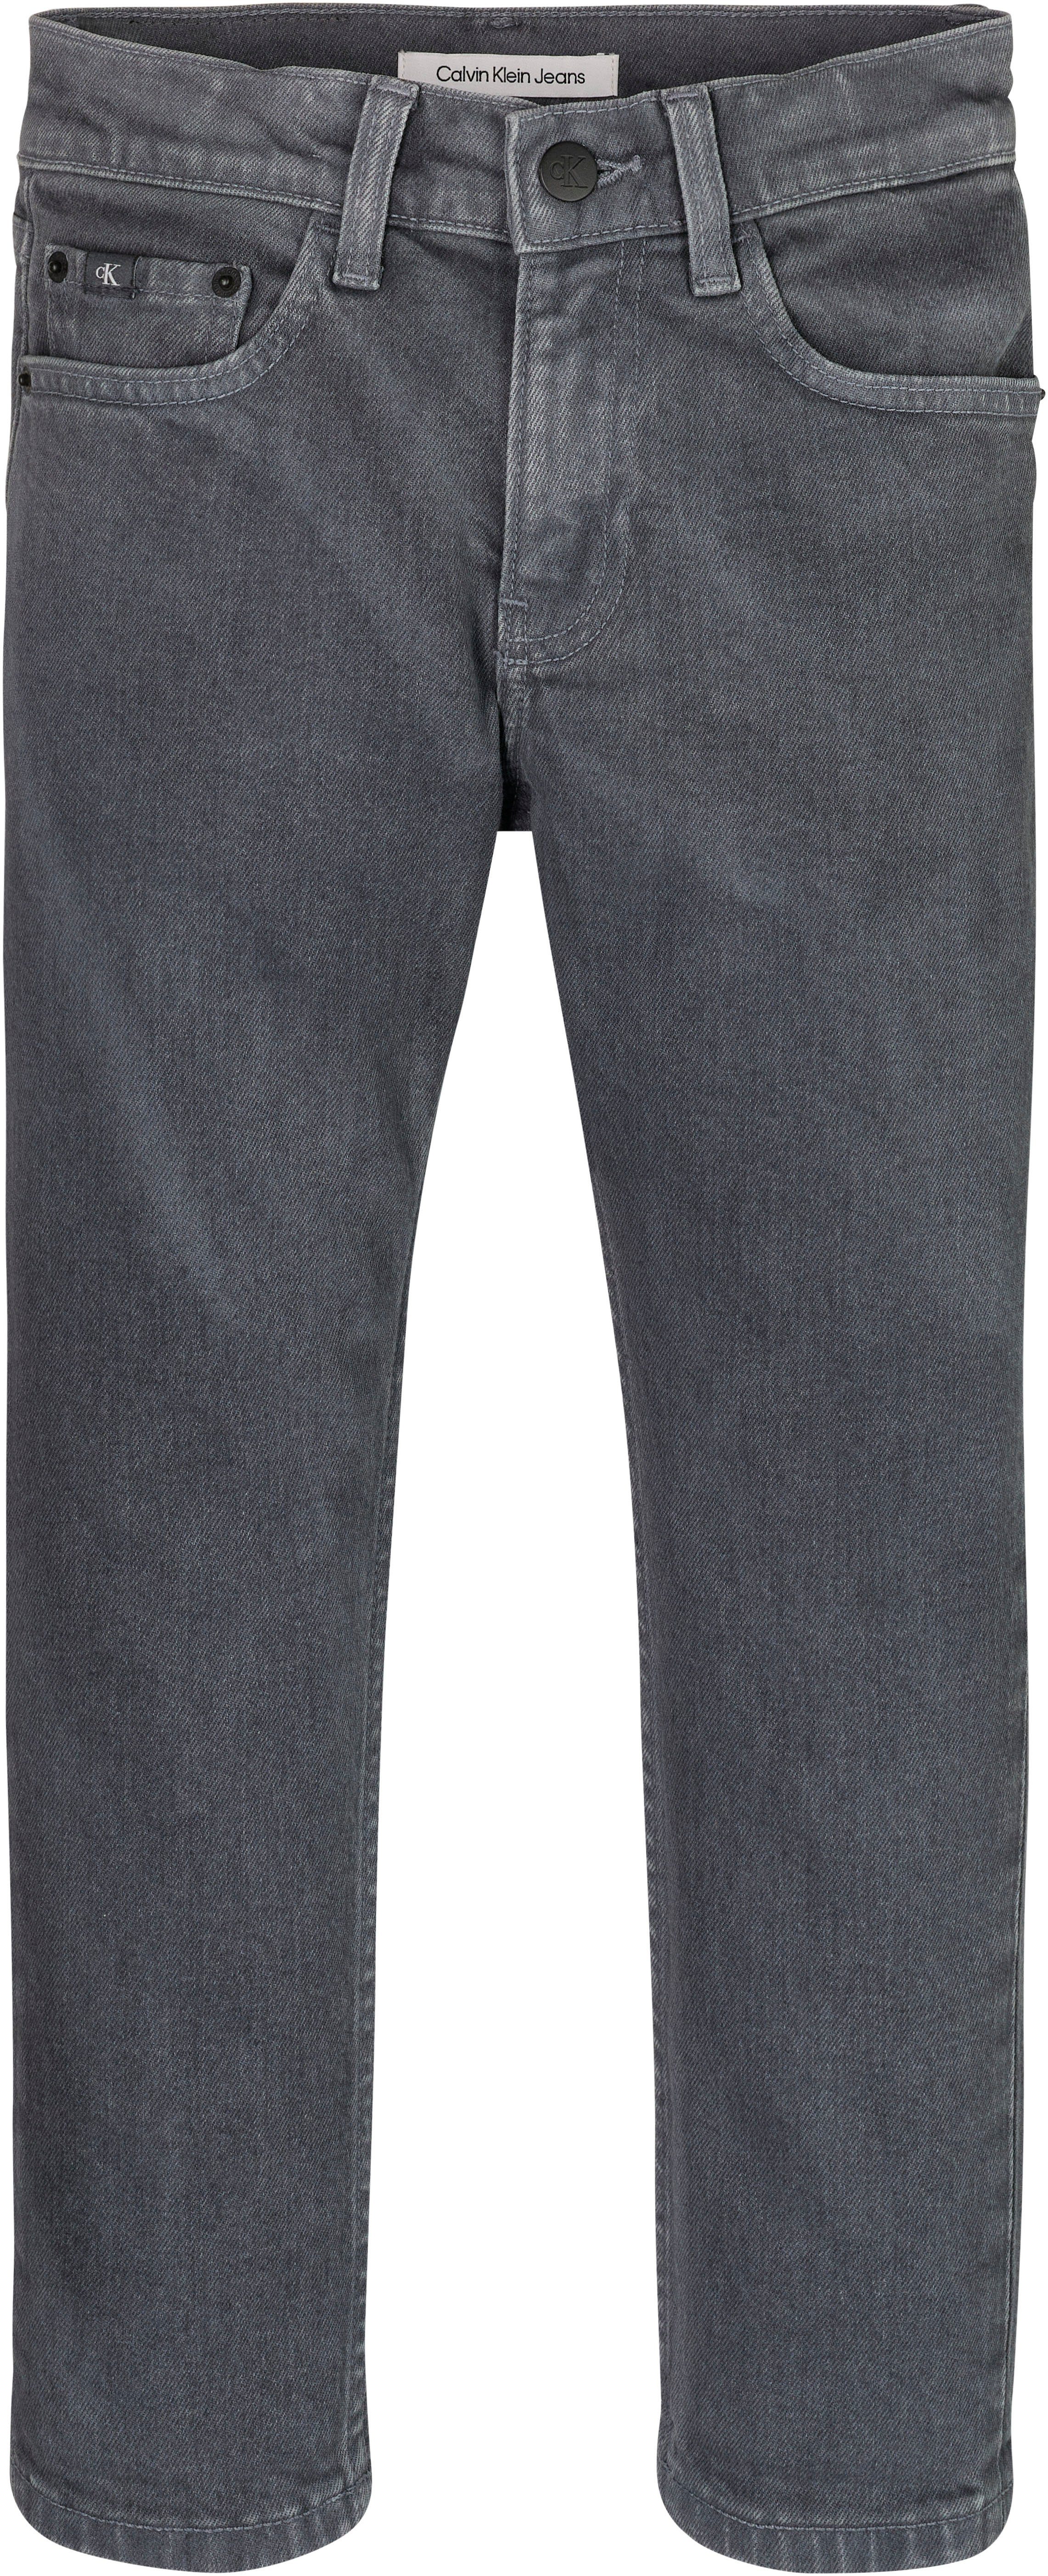 GREY Klein DAD Jeans DARK Calvin OVERDYED Stretch-Jeans